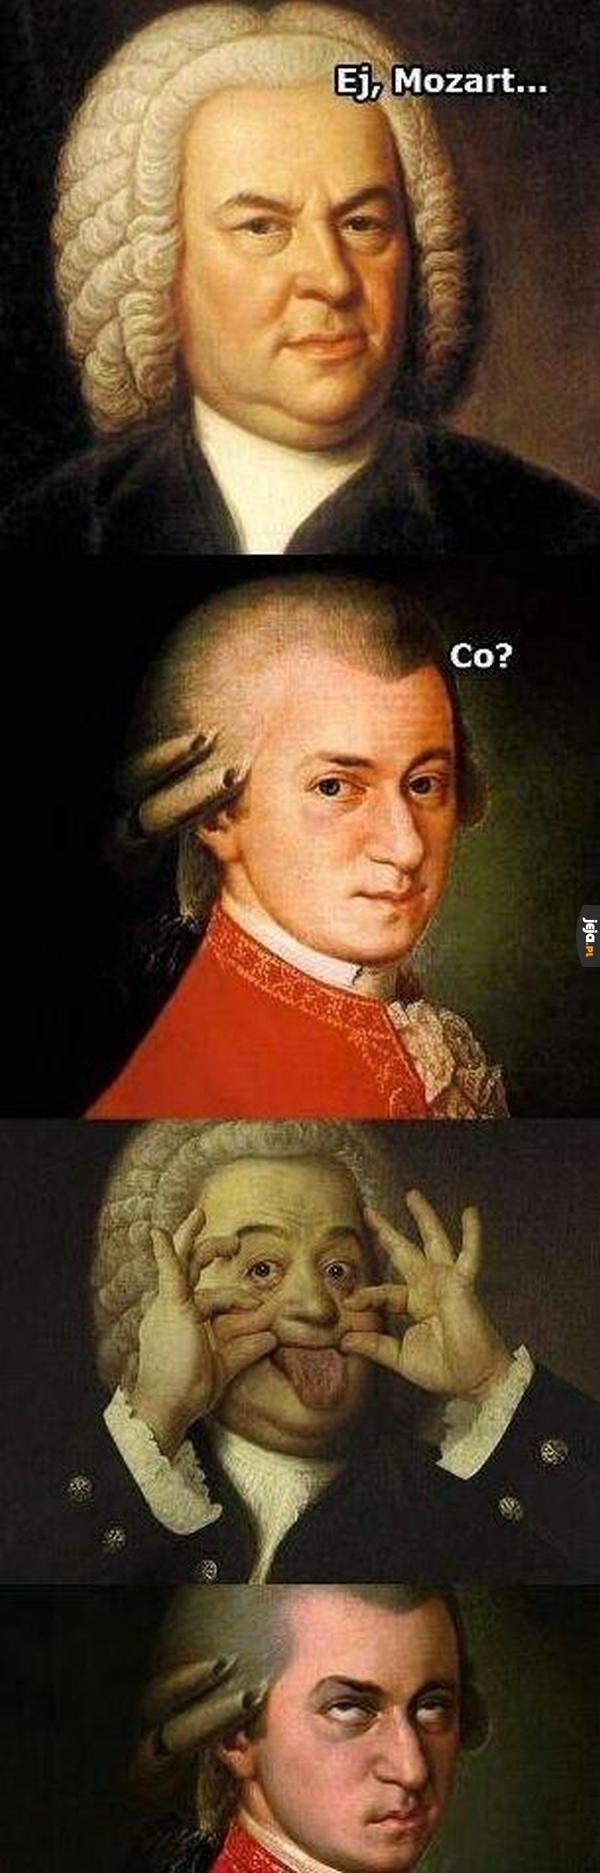 Ej, Mozart!